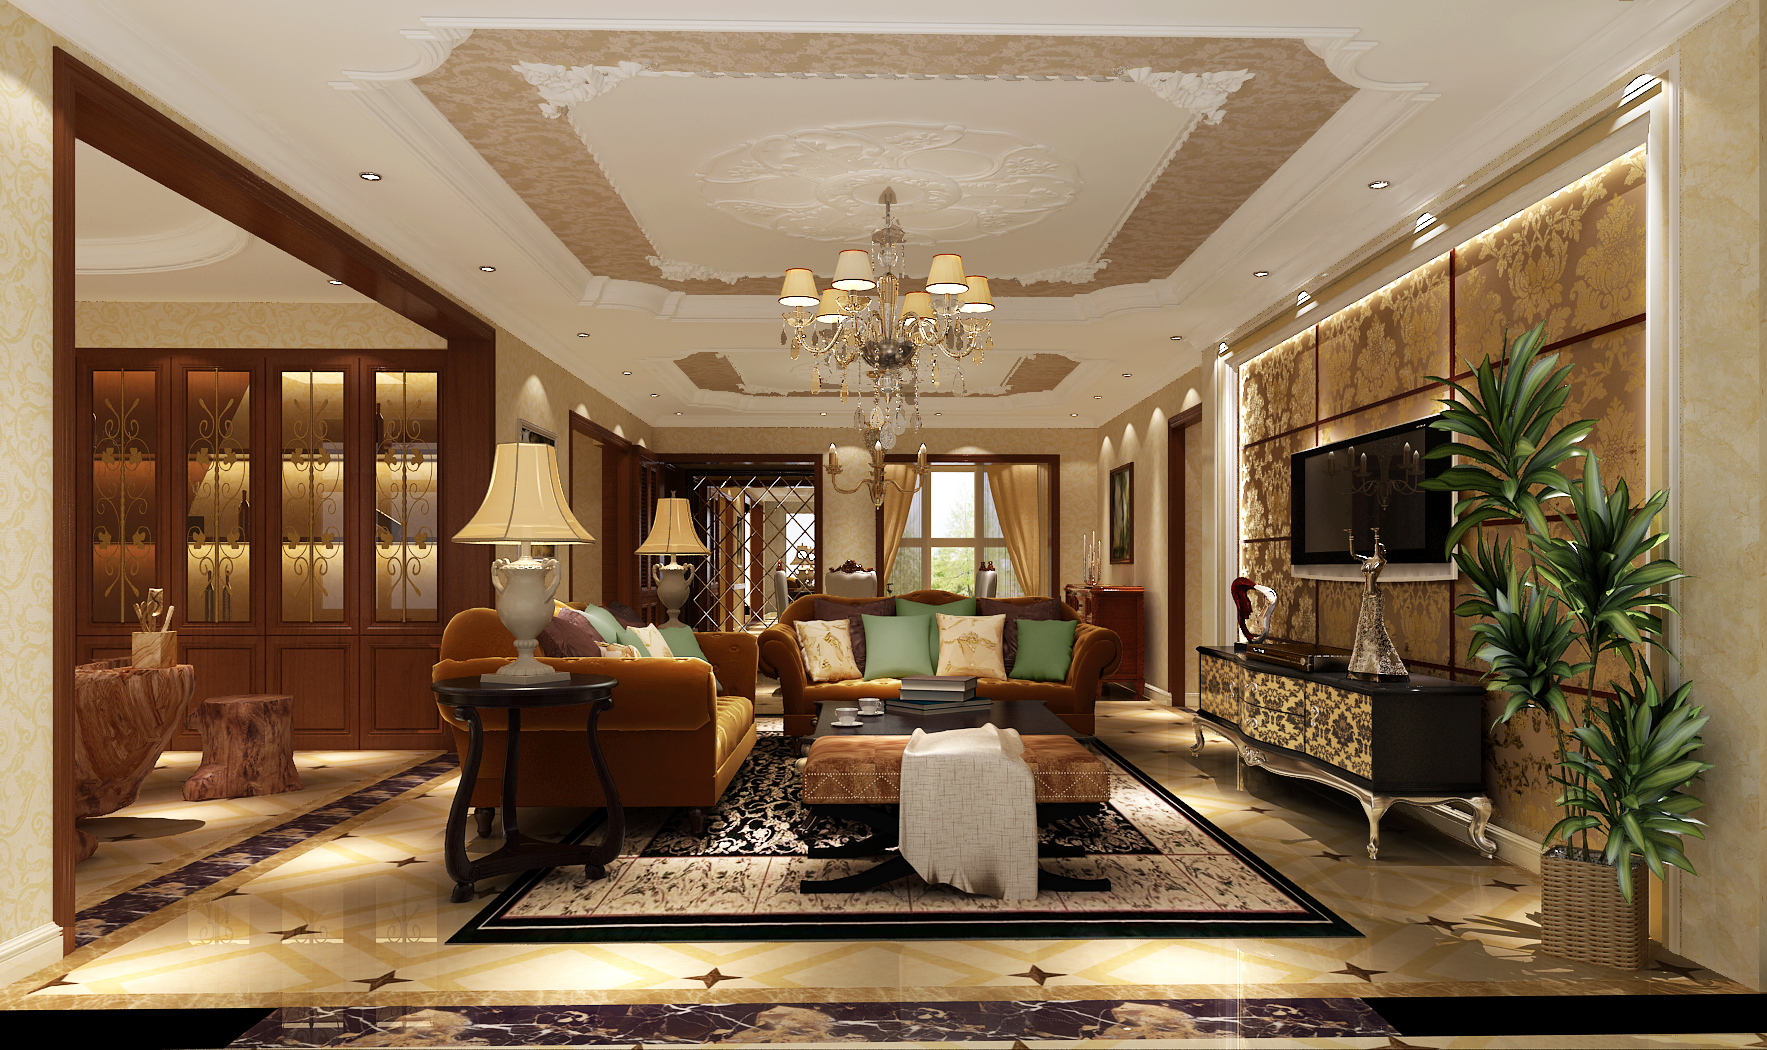 高度国际 金色漫香苑 公寓 美式风格 五居室 客厅图片来自高度国际在金色漫香苑——188平米的分享